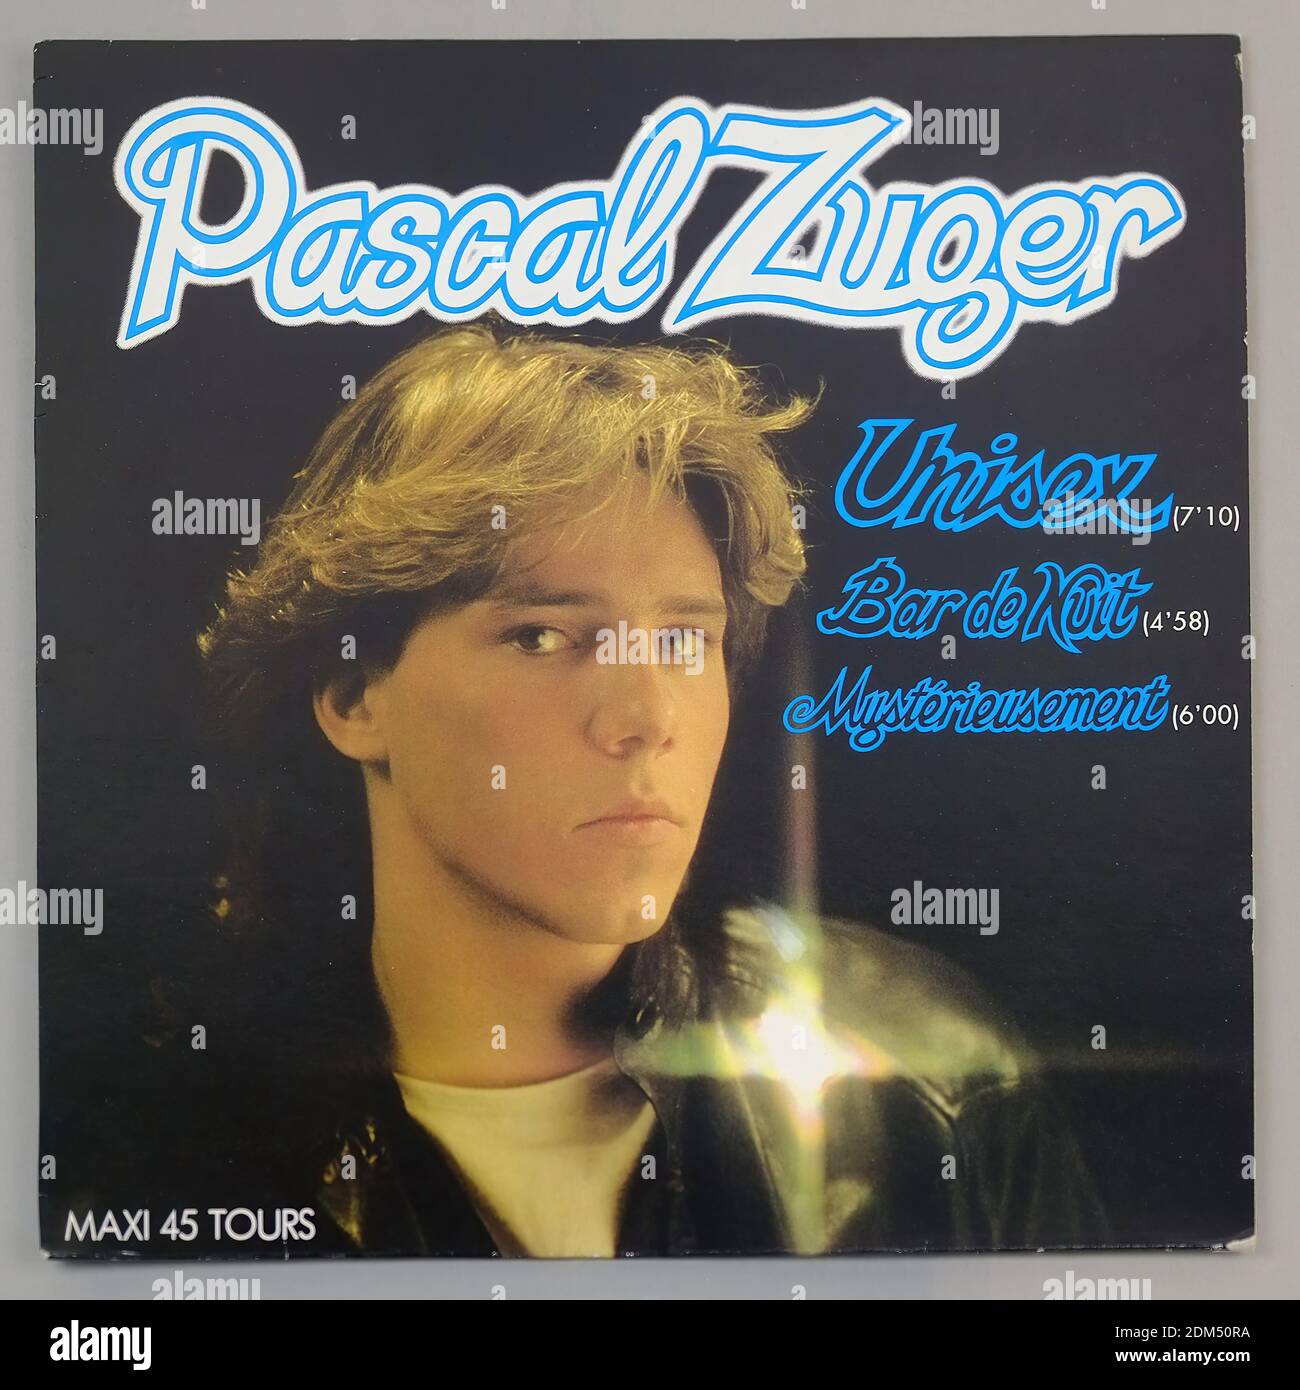 PASCAL ZUGER Unisex Bar De Nuit Mystérieusement 12 MAXI SINGLE VINYL -  Vintage Vinyl Record Cover Stock Photo - Alamy